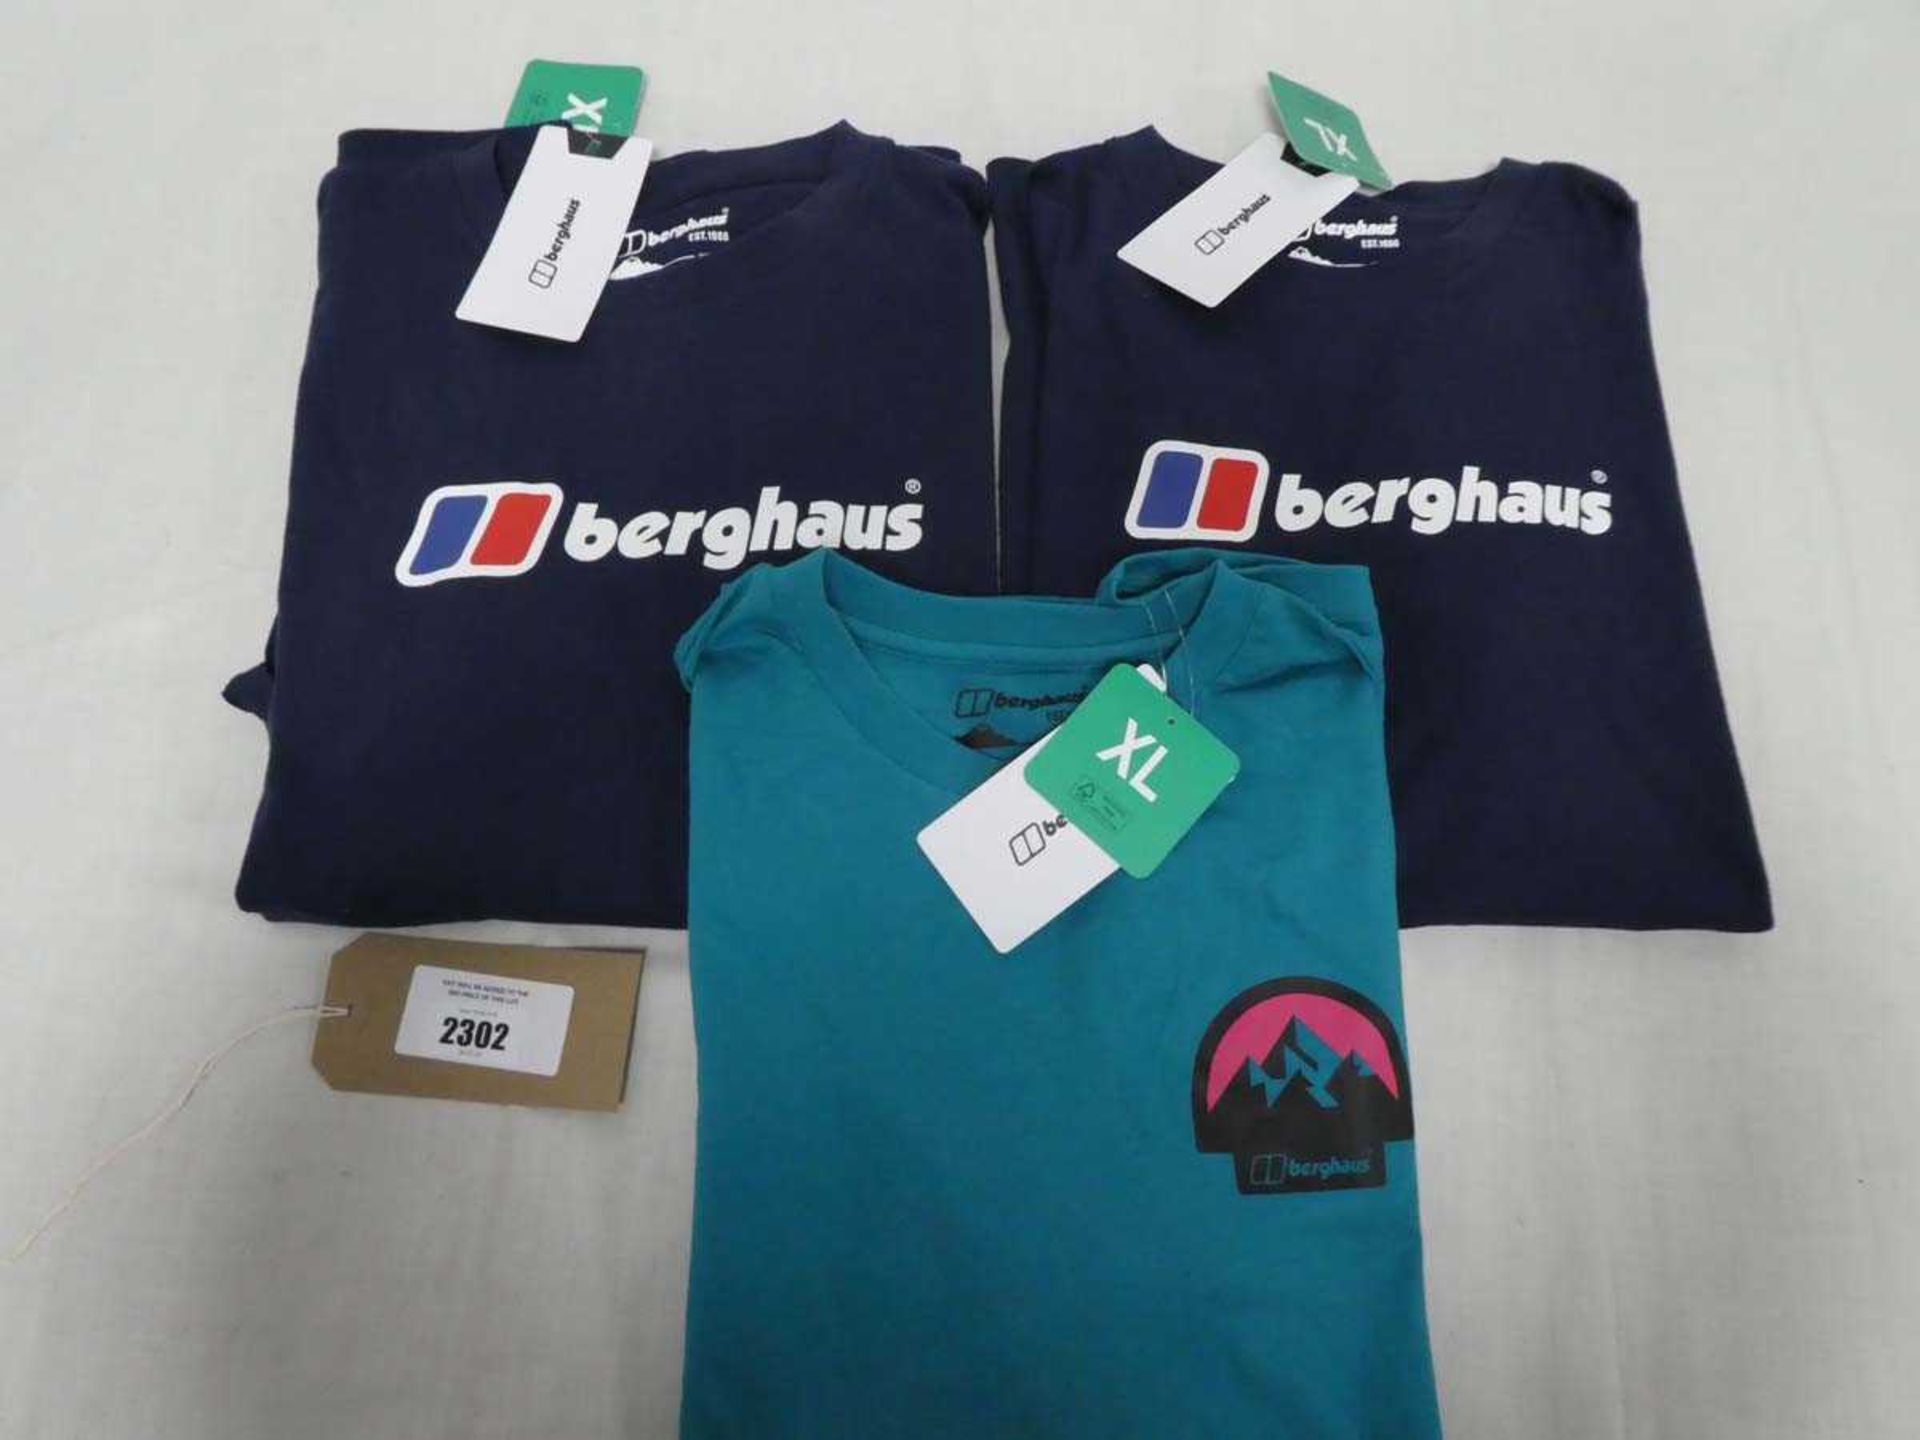 +VAT 3 Berghaus t-shirts (all size XL)